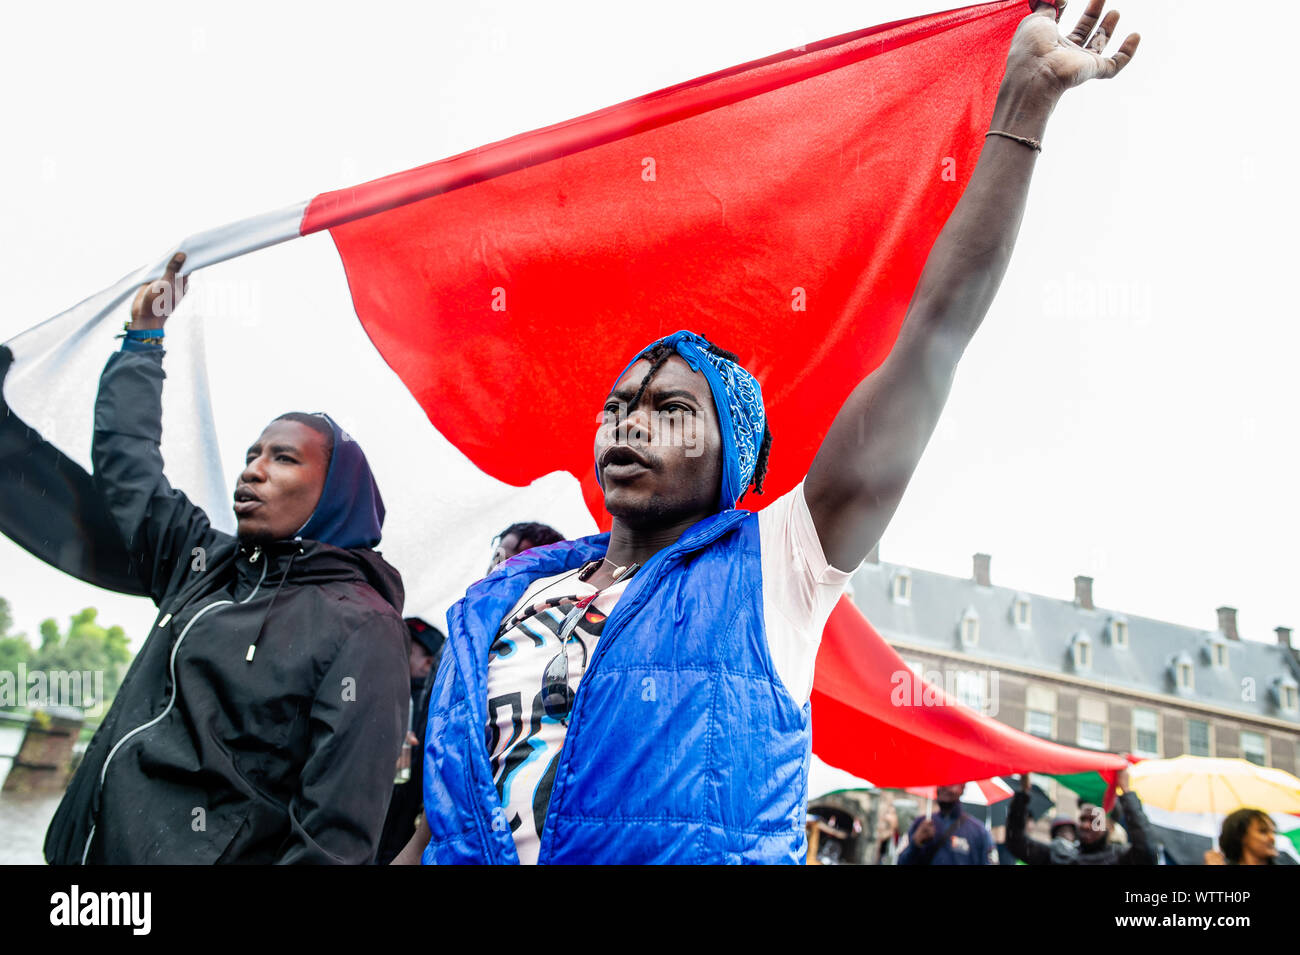 Un grupo de manifestantes sudaneses tienen una gran bandera de Sudán durante la manifestación.Desde el 6 de septiembre hasta el 11 de septiembre, un sudanés internacional de marzo tuvo lugar empezando en Londres y terminando en La Haya tras una parada en Francia y Bélgica. El 11 de septiembre, la marcha llegó delante del edificio de la Corte Penal Internacional, situada en La Haya. La marcha se celebró en solidaridad con la revolución de Sudán y pide el enjuiciamiento de los criminales militares en Sudán. La marcha fue organizada por la Iniciativa Sudanesa de Europa. Foto de stock